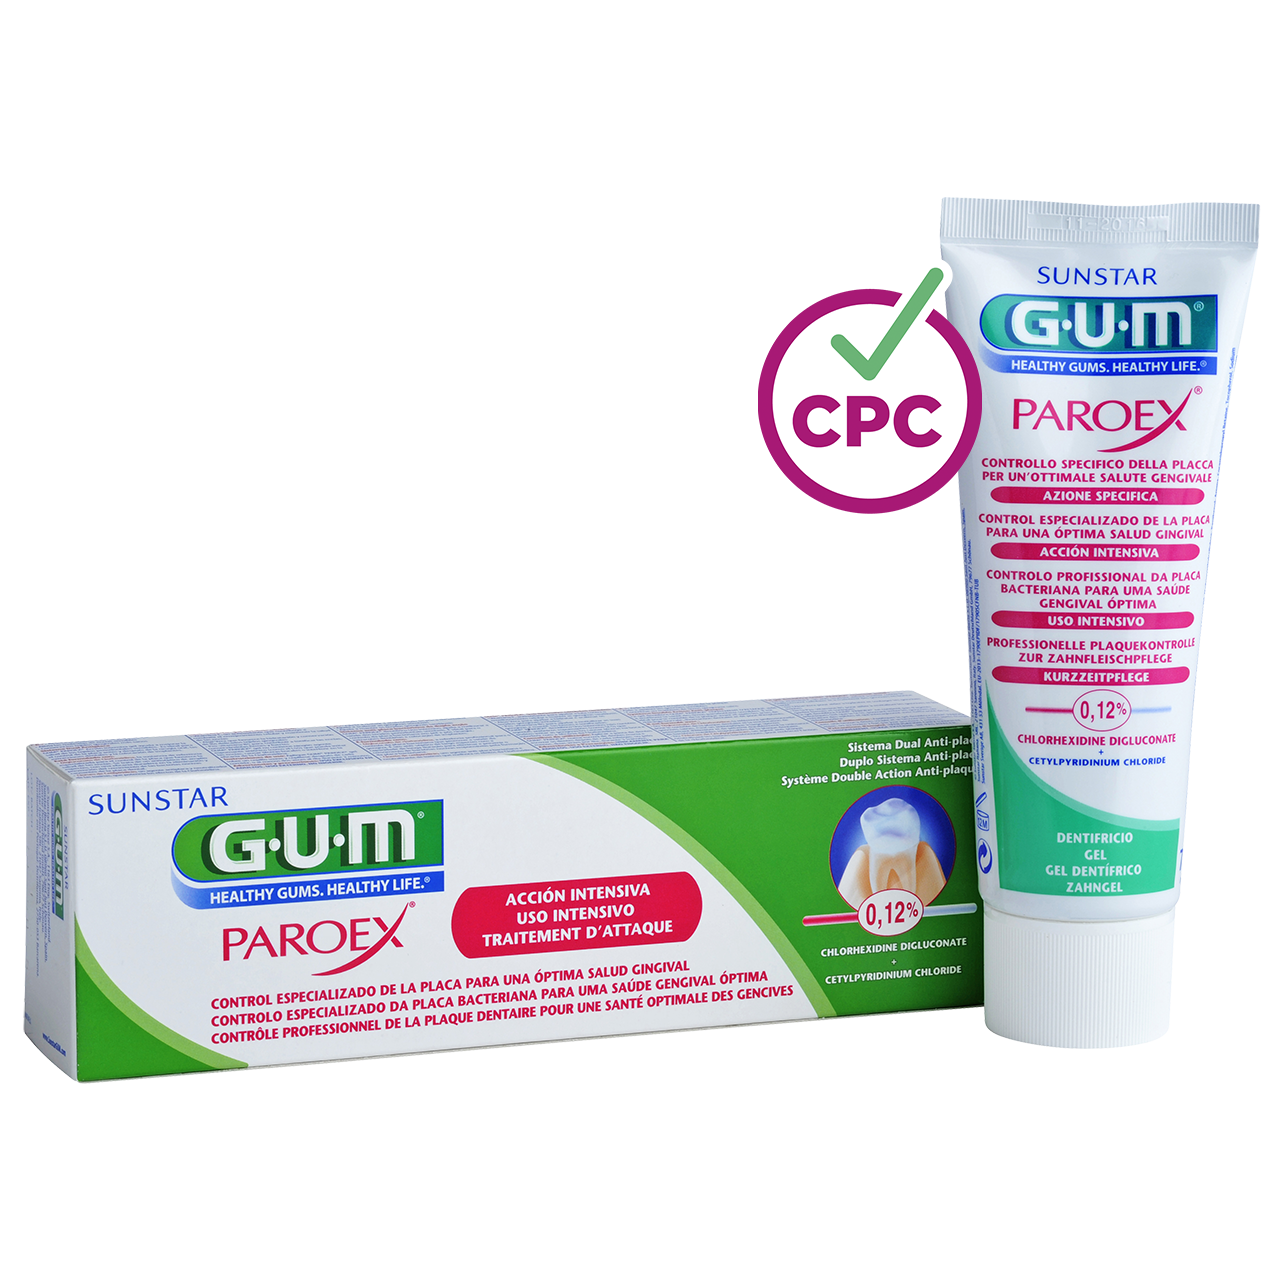 Pasta de dientes GUM PAROEX 0,12% tratamiento